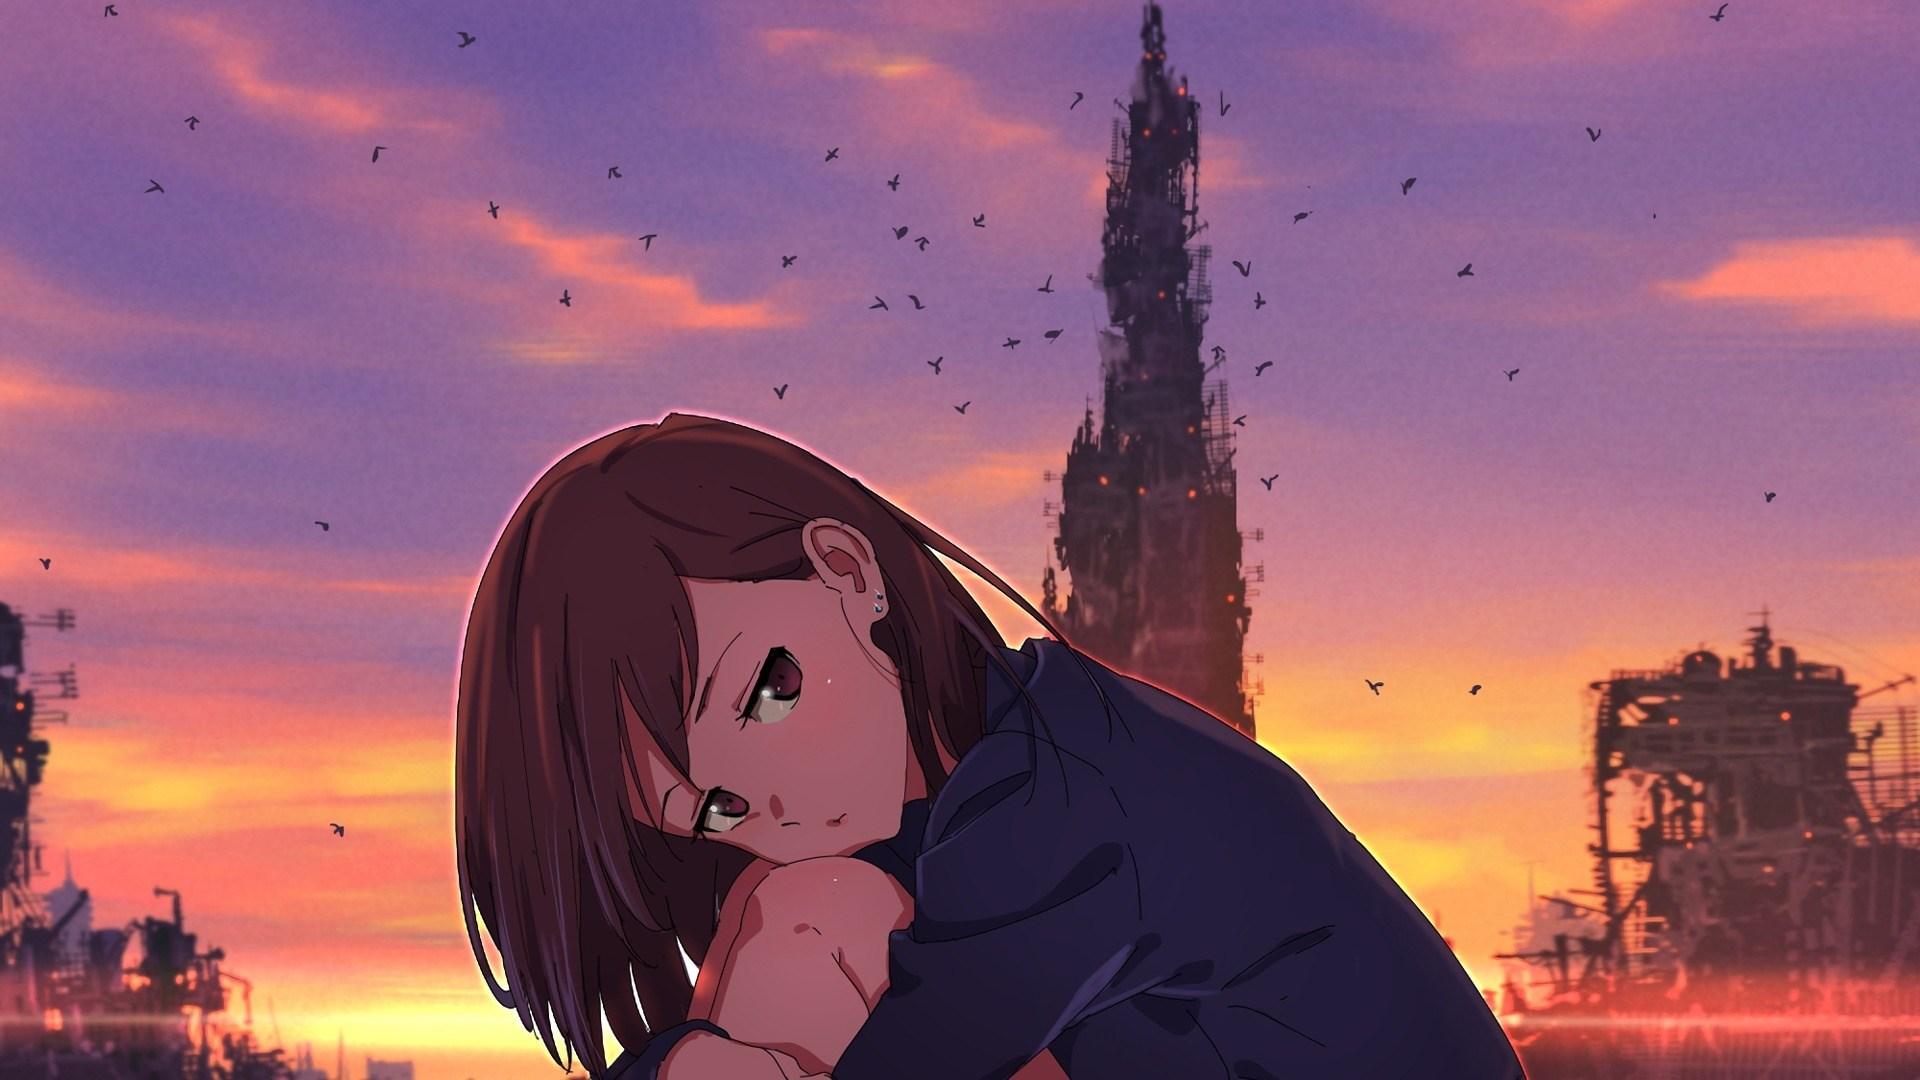 Broken Heart Anime Girl Full HD Wallpaper Heart